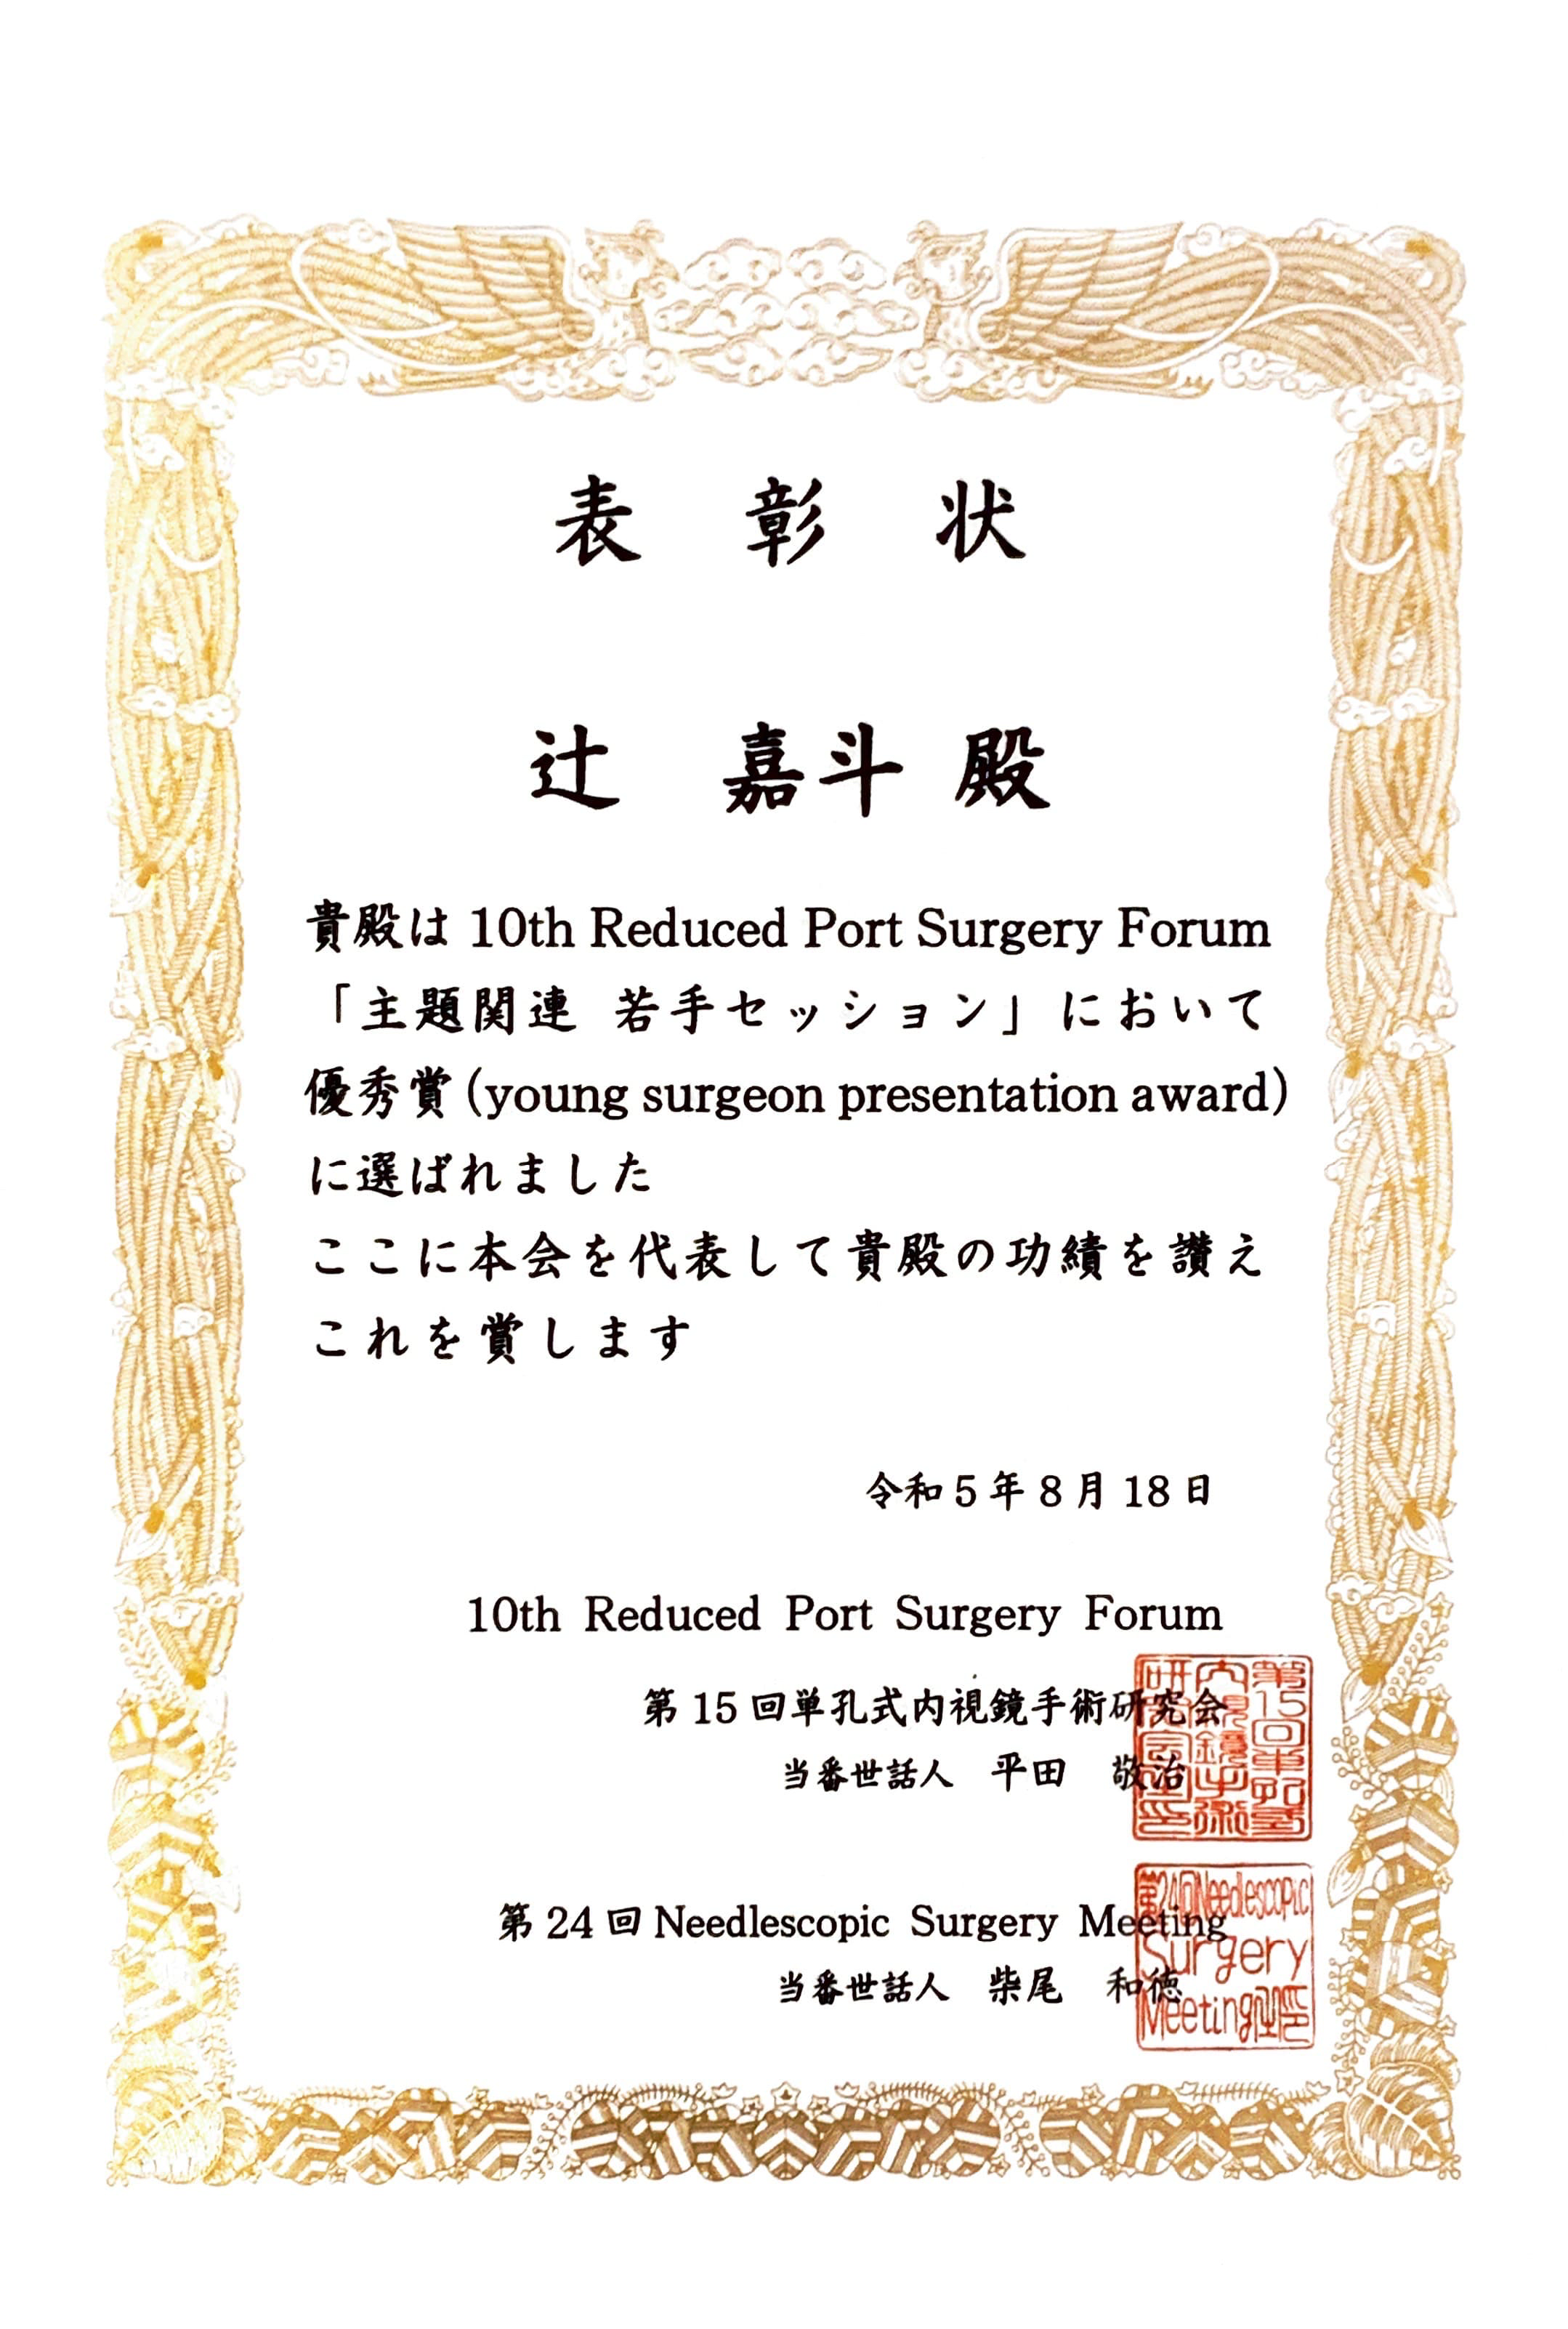 辻先生（指導医：西沢先生）の演題が、 10th Reduced Port Surgery Forum で優秀賞に選ばれ、全体懇親会で表彰されました。 審査員の先生方から大絶賛のコメントをいただきました。 辻先生、おめでとうございます。